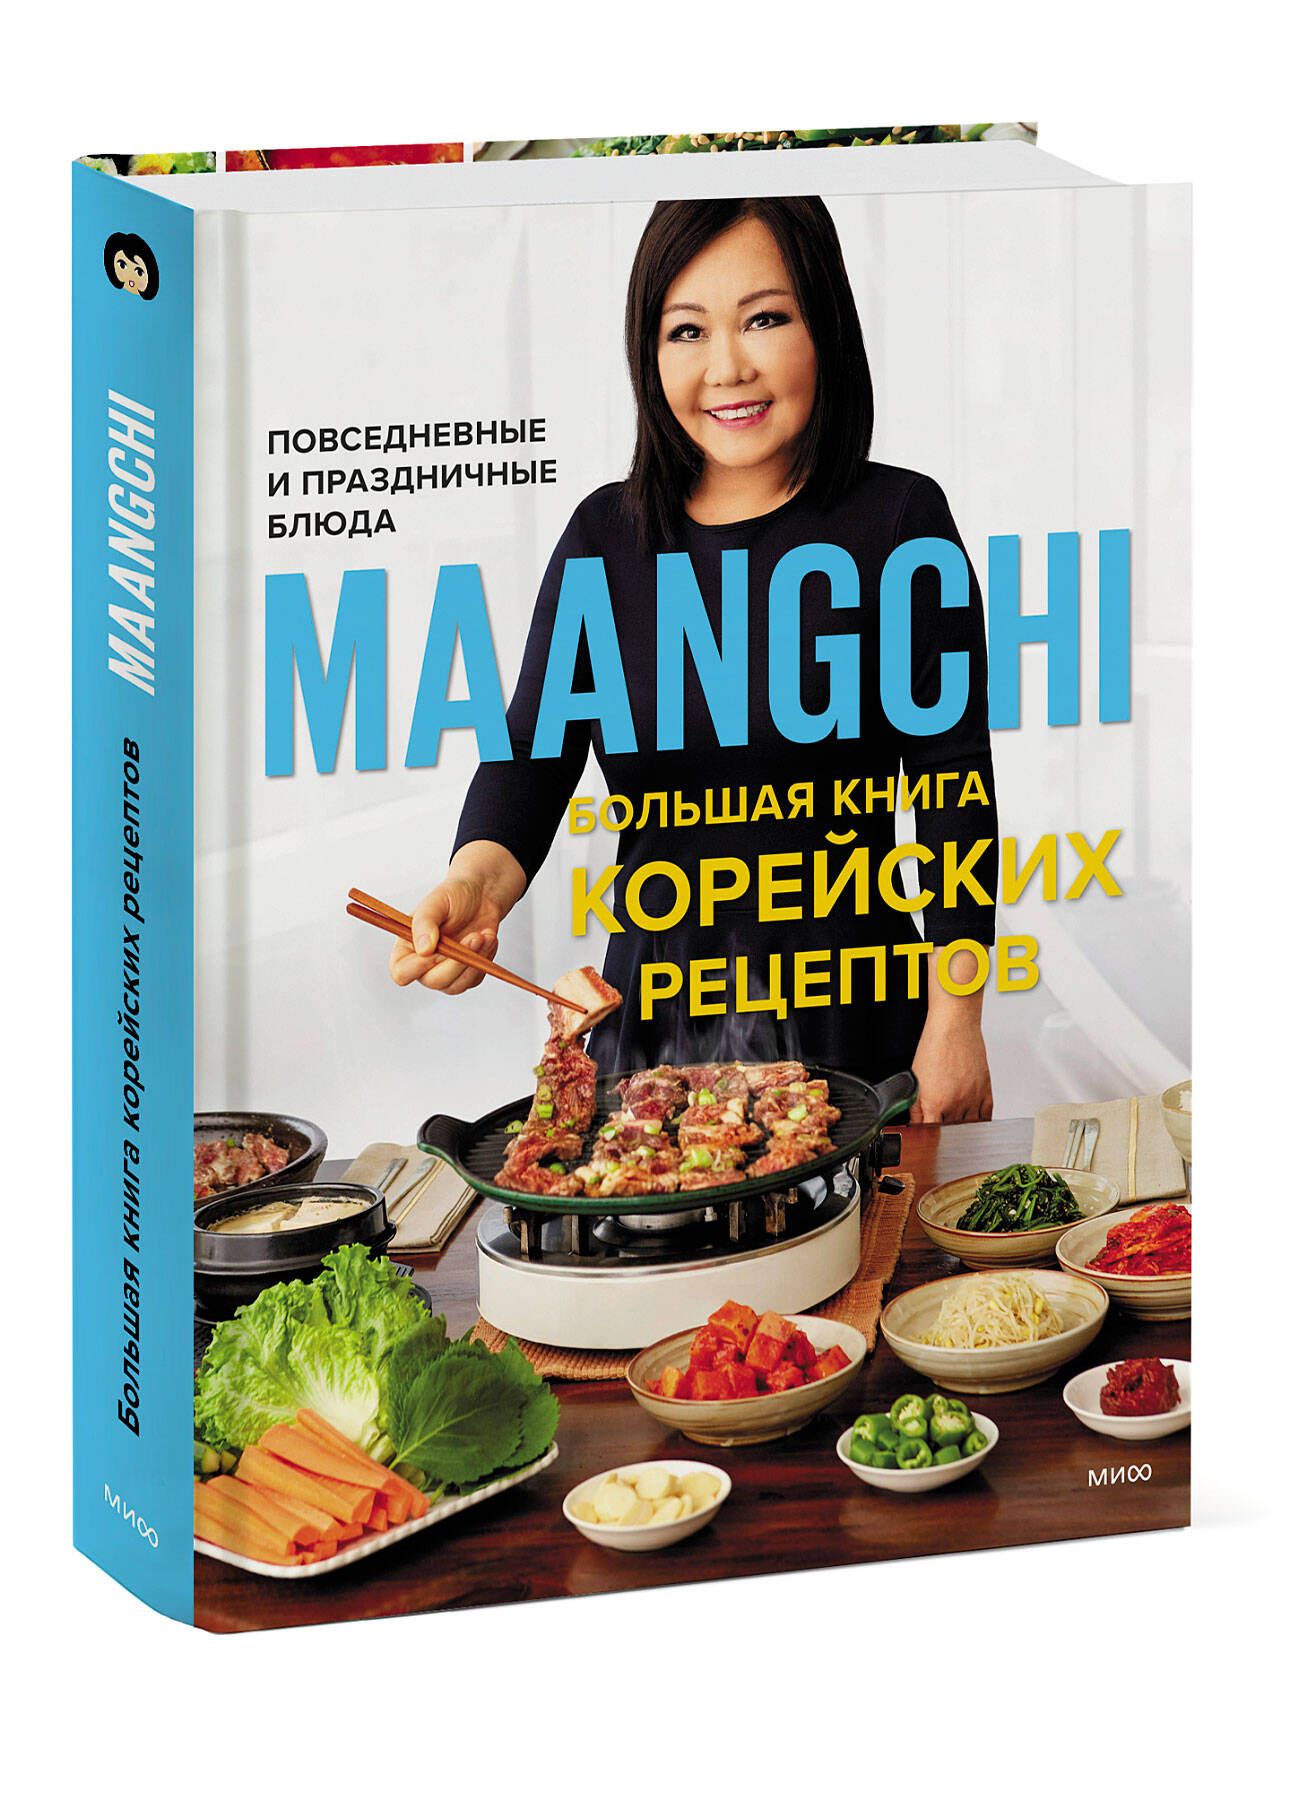 Кулинарный ликбез: 10 лучших книг о кулинарии со всего мира - Афиша Daily